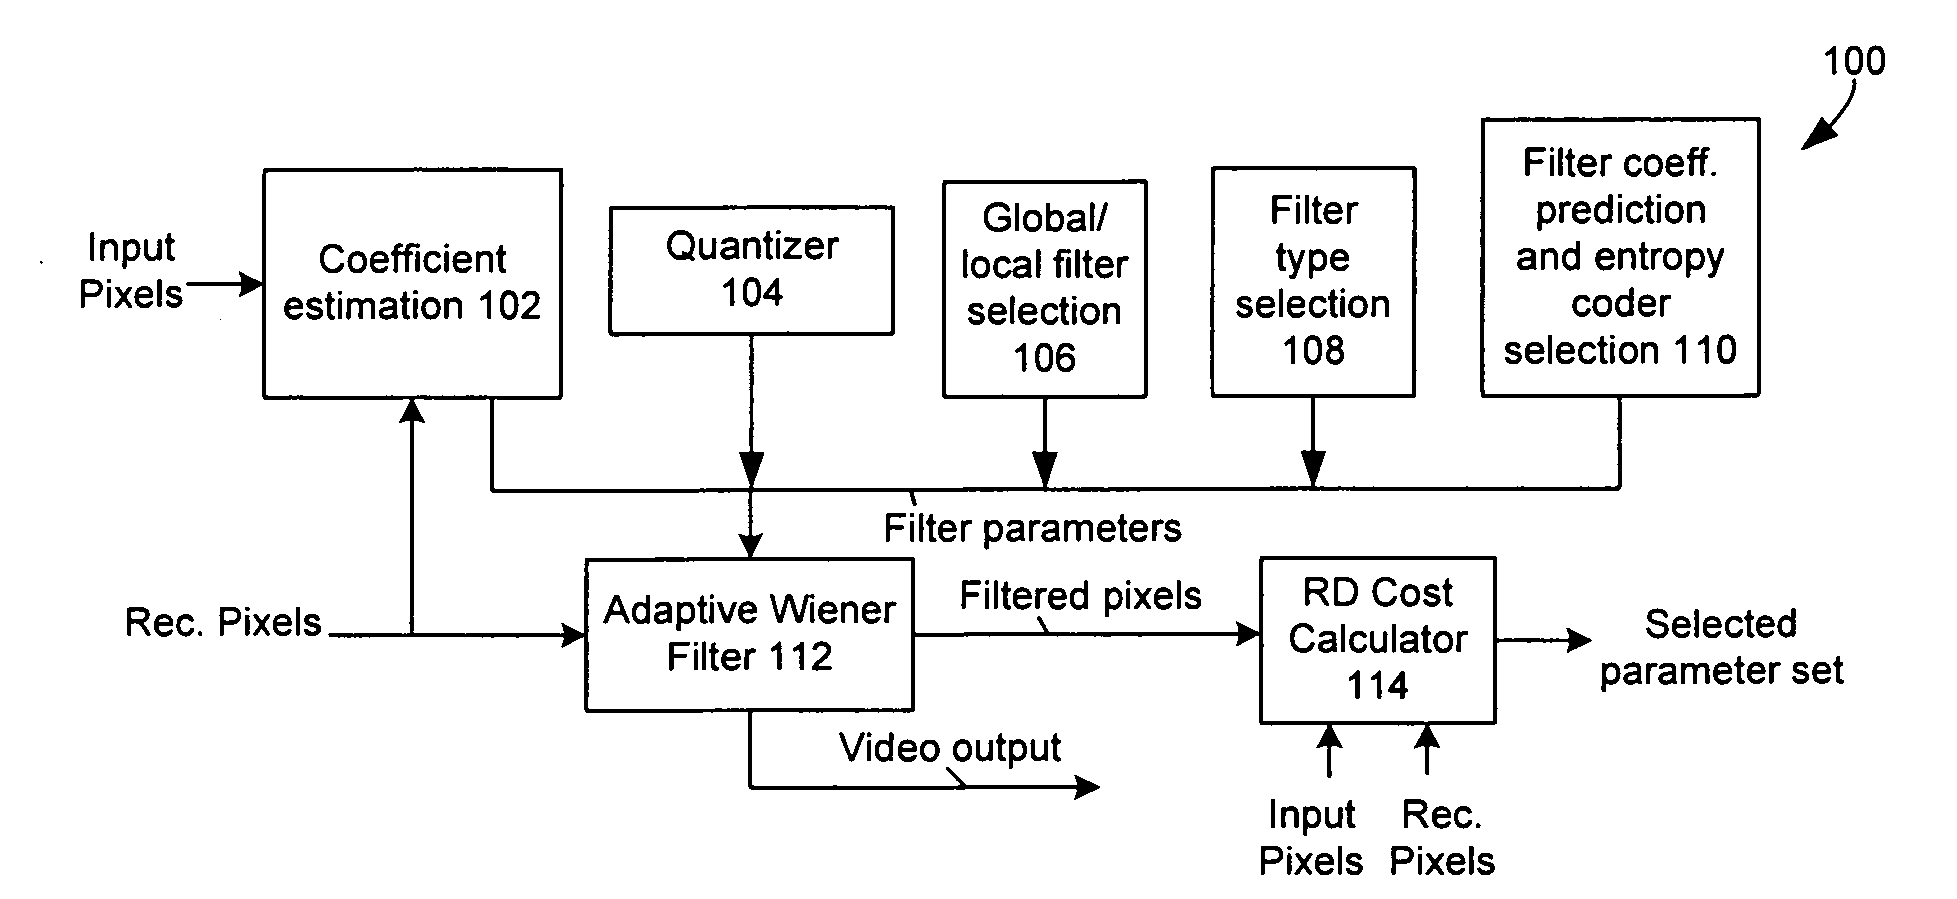 Video encoding techniques